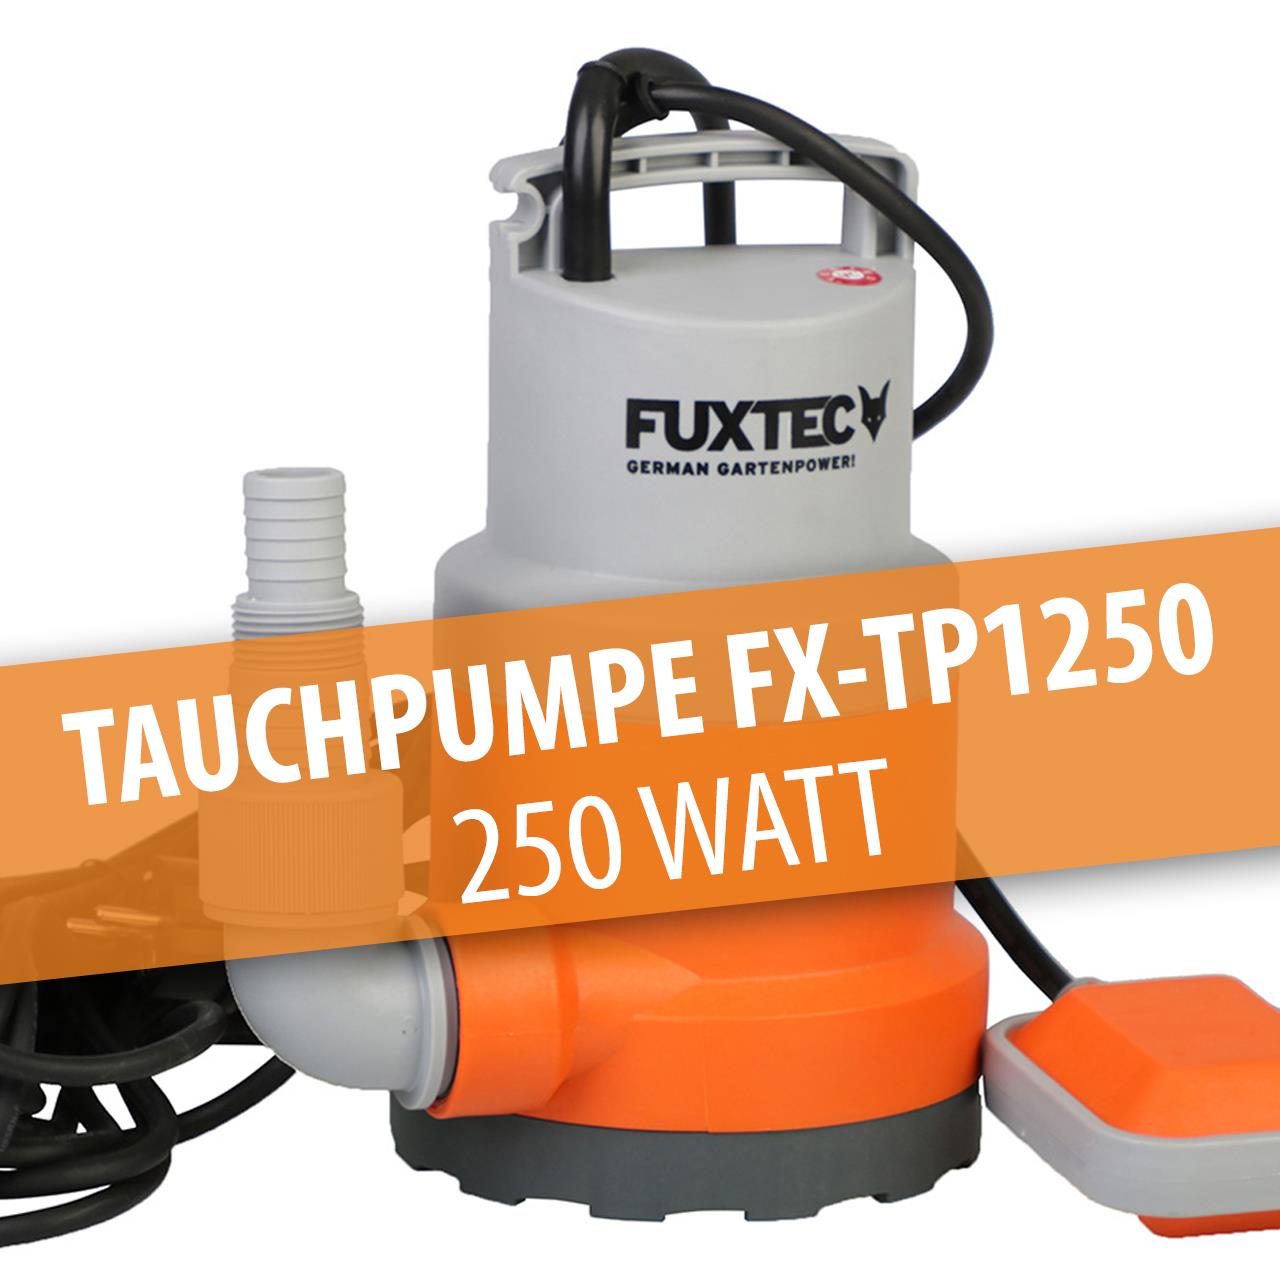 FUXTEC Tauchpumpe FX-TP1250 - 250 Watt